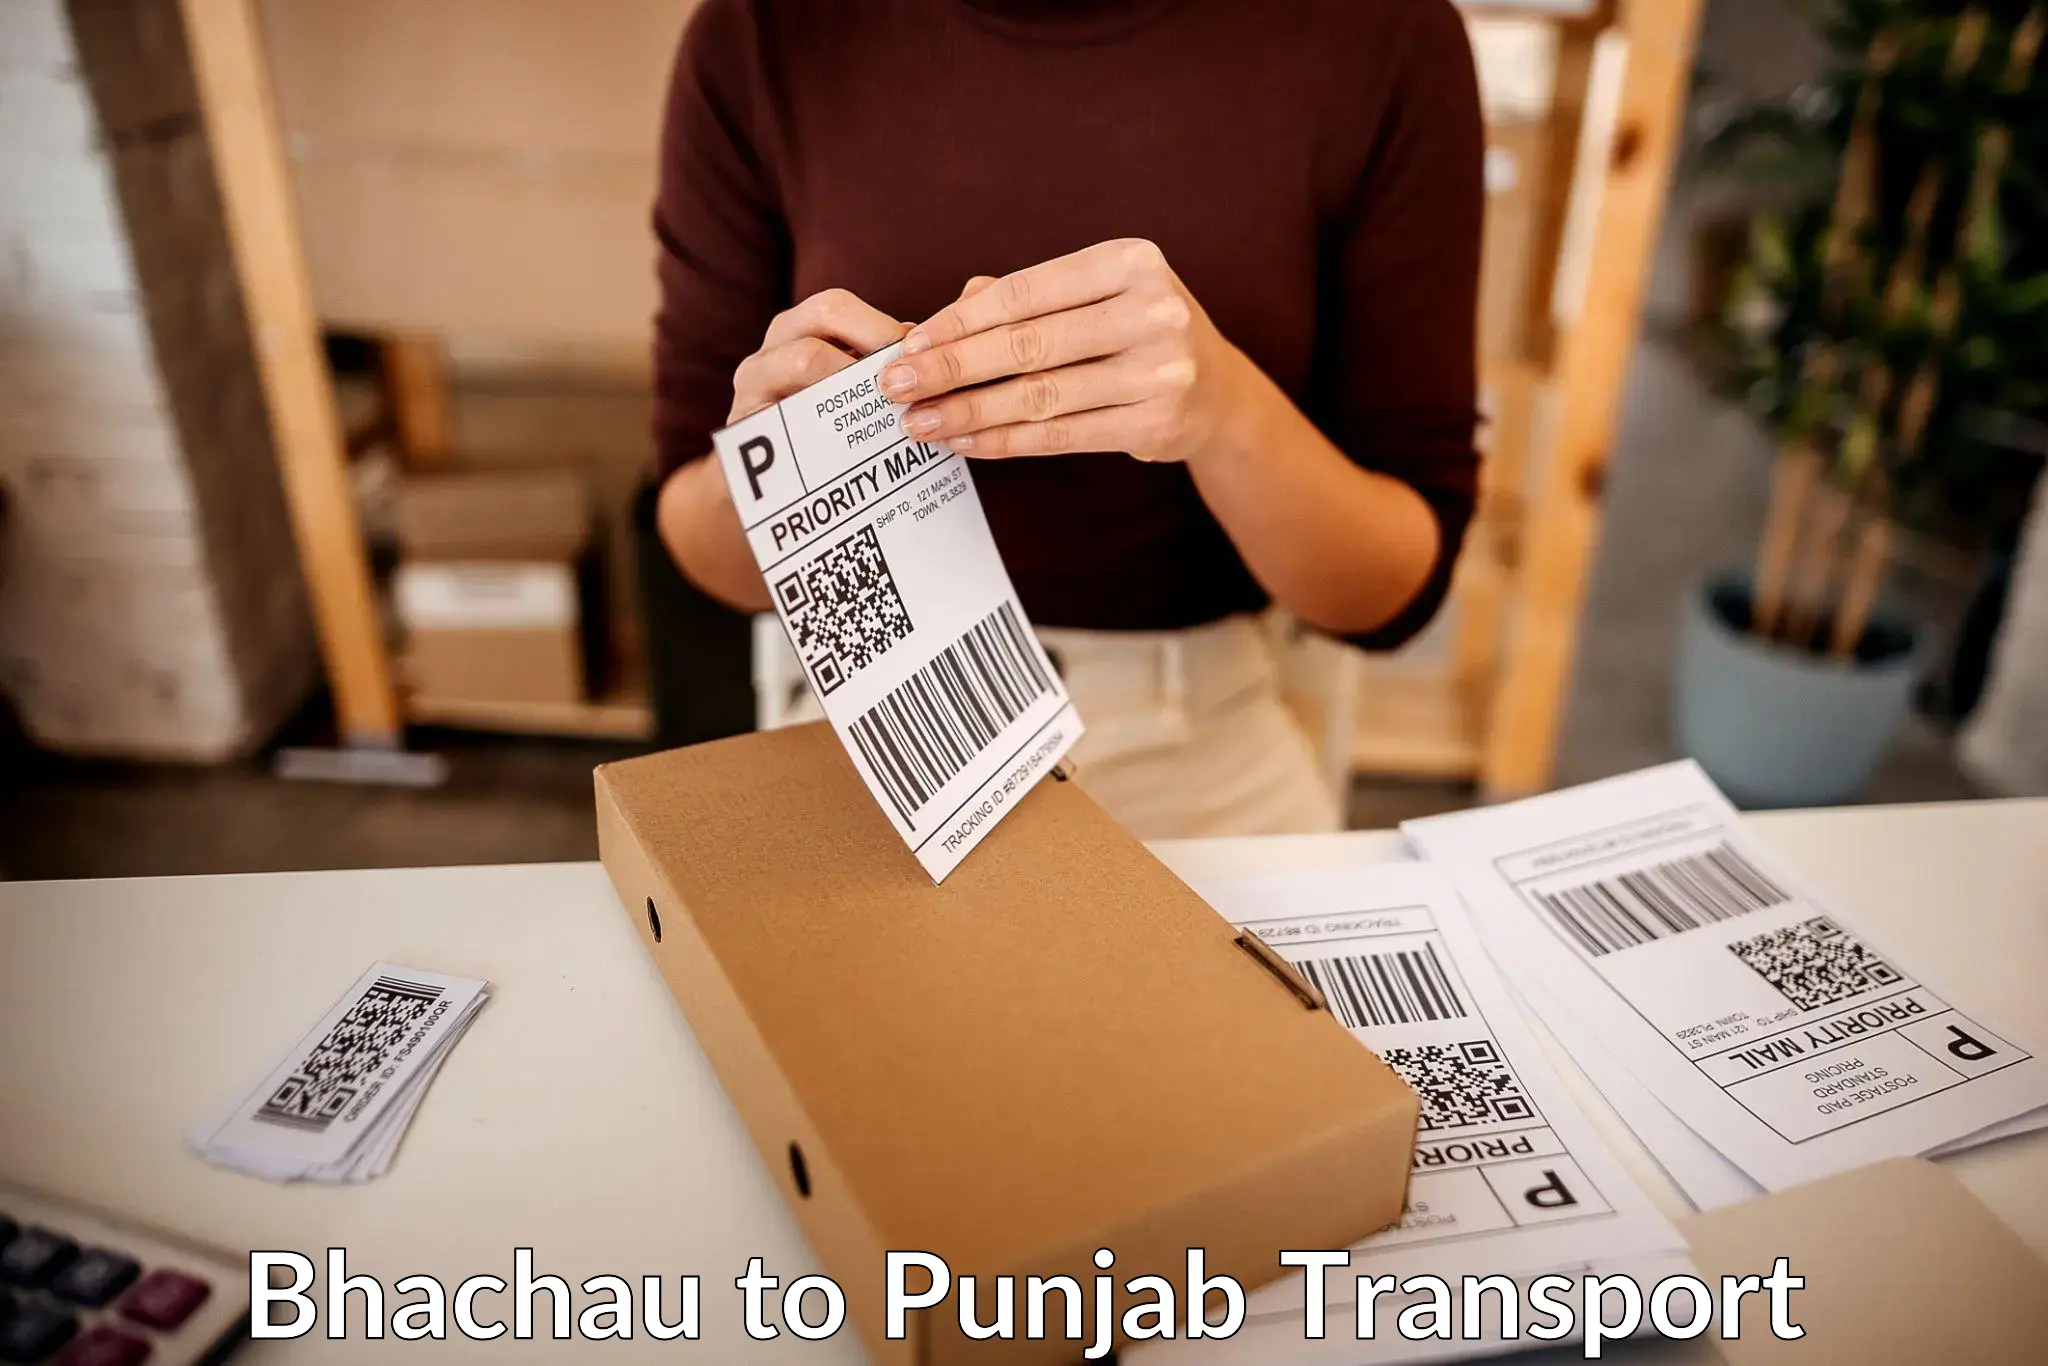 Furniture transport service Bhachau to Dera Bassi